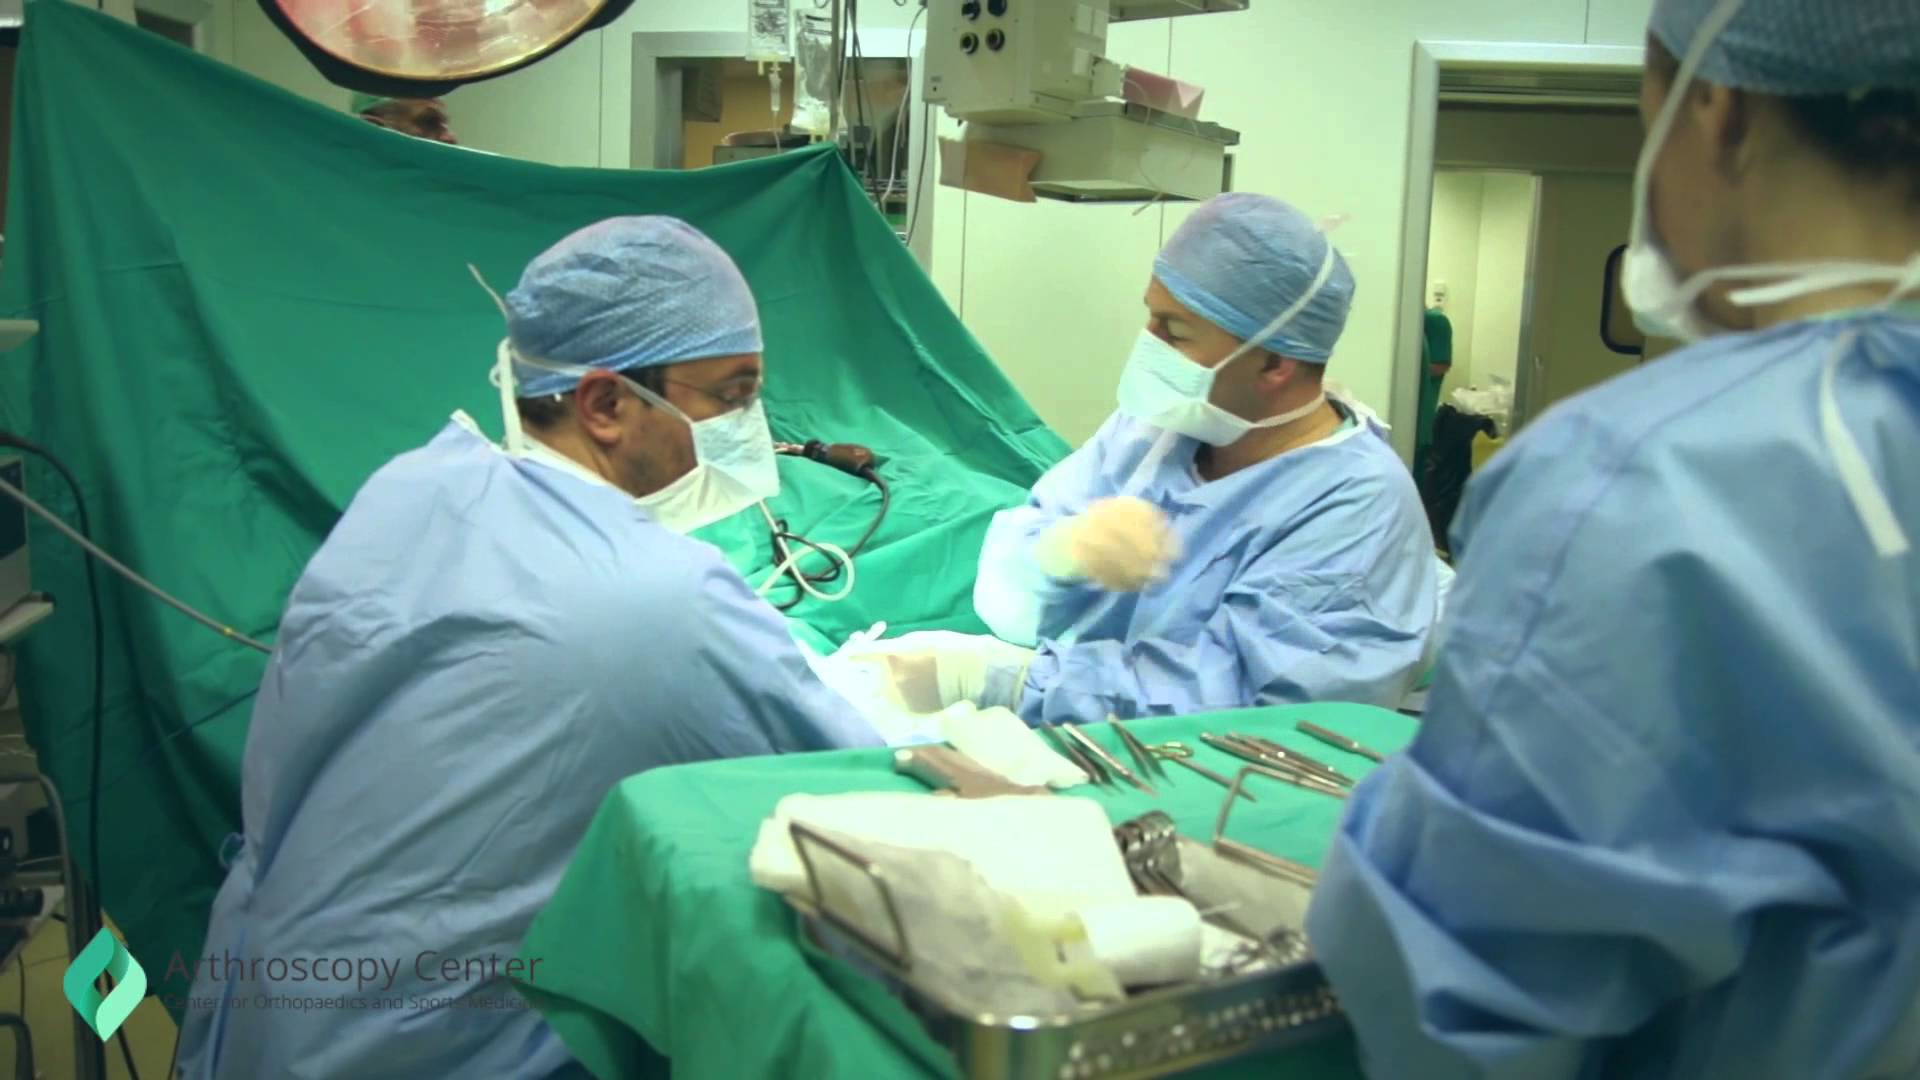 Η πανδημία ακυρώνει 28 εκ. χειρουργεία παγκοσμίως - 7.500 ανά εβδομάδα μόνο στην Ελλάδα